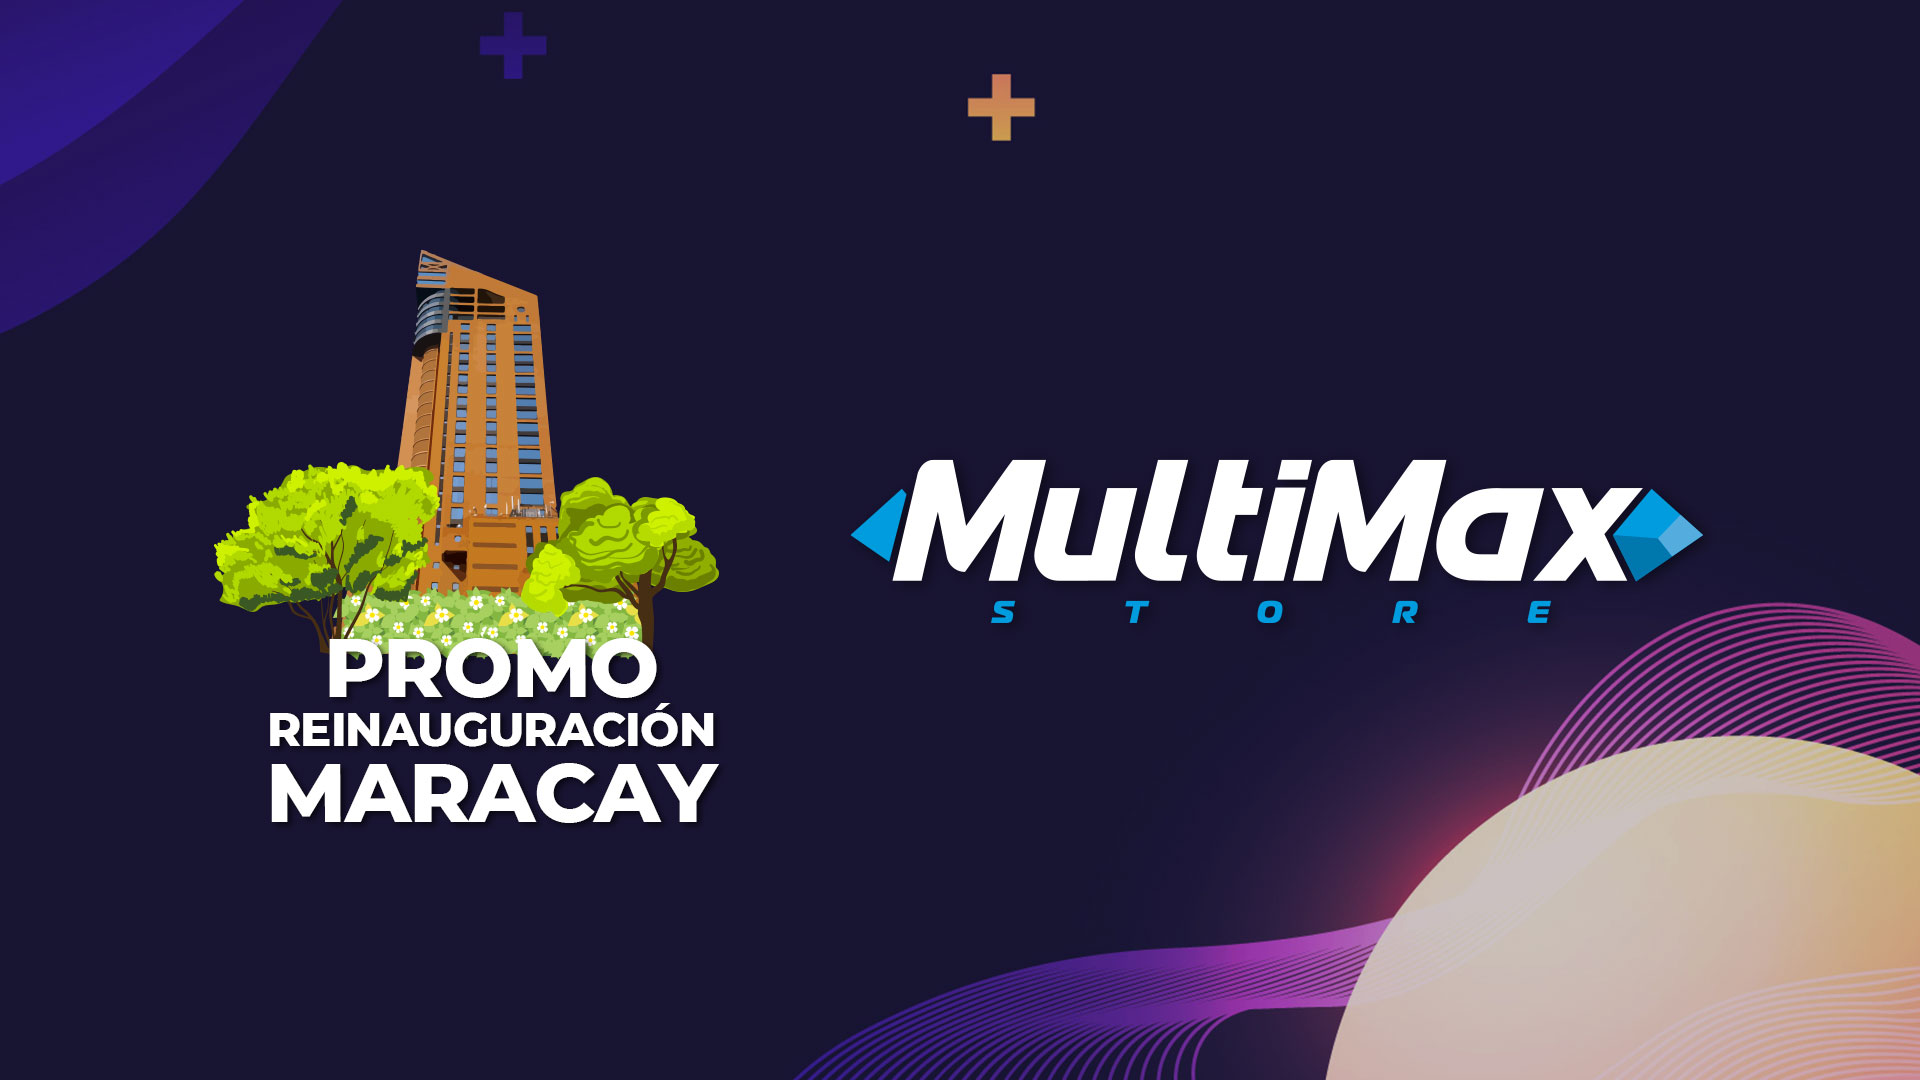 MultiMax Maracay presenta Promo de Reinauguración en su renovado concepto